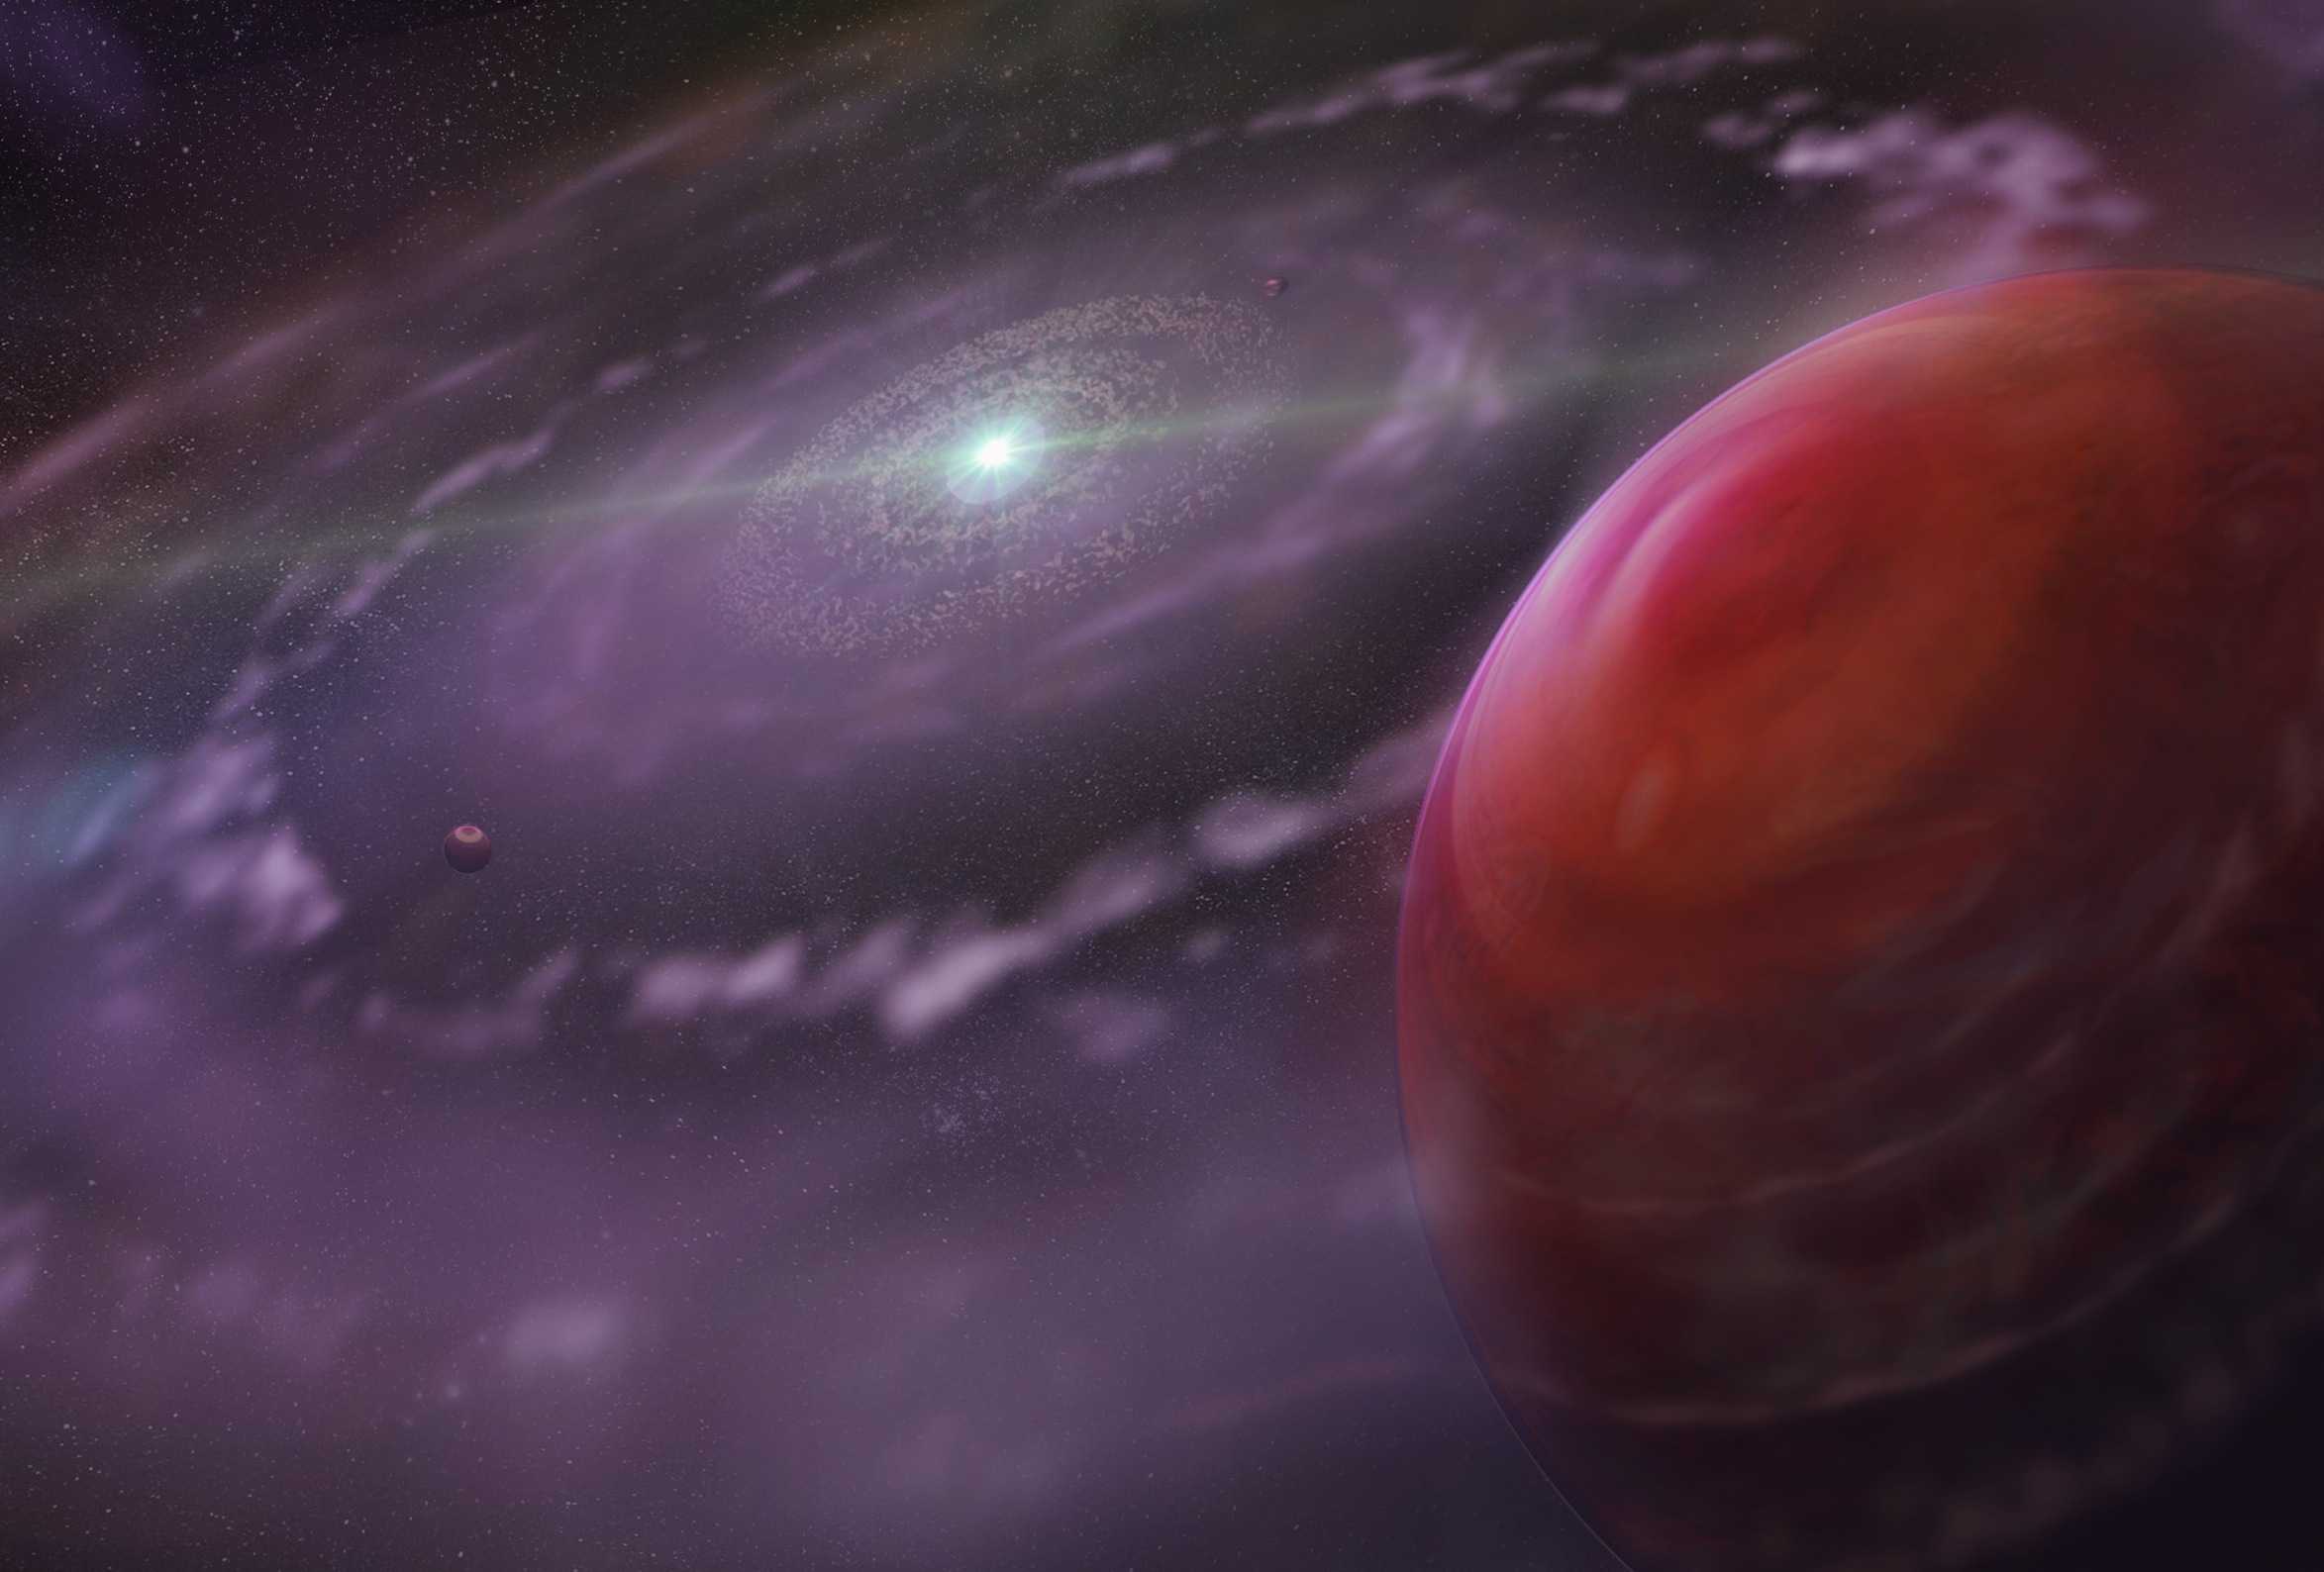 «Уэбб» изучил систему HR 8799 с четырьмя массивными планетами